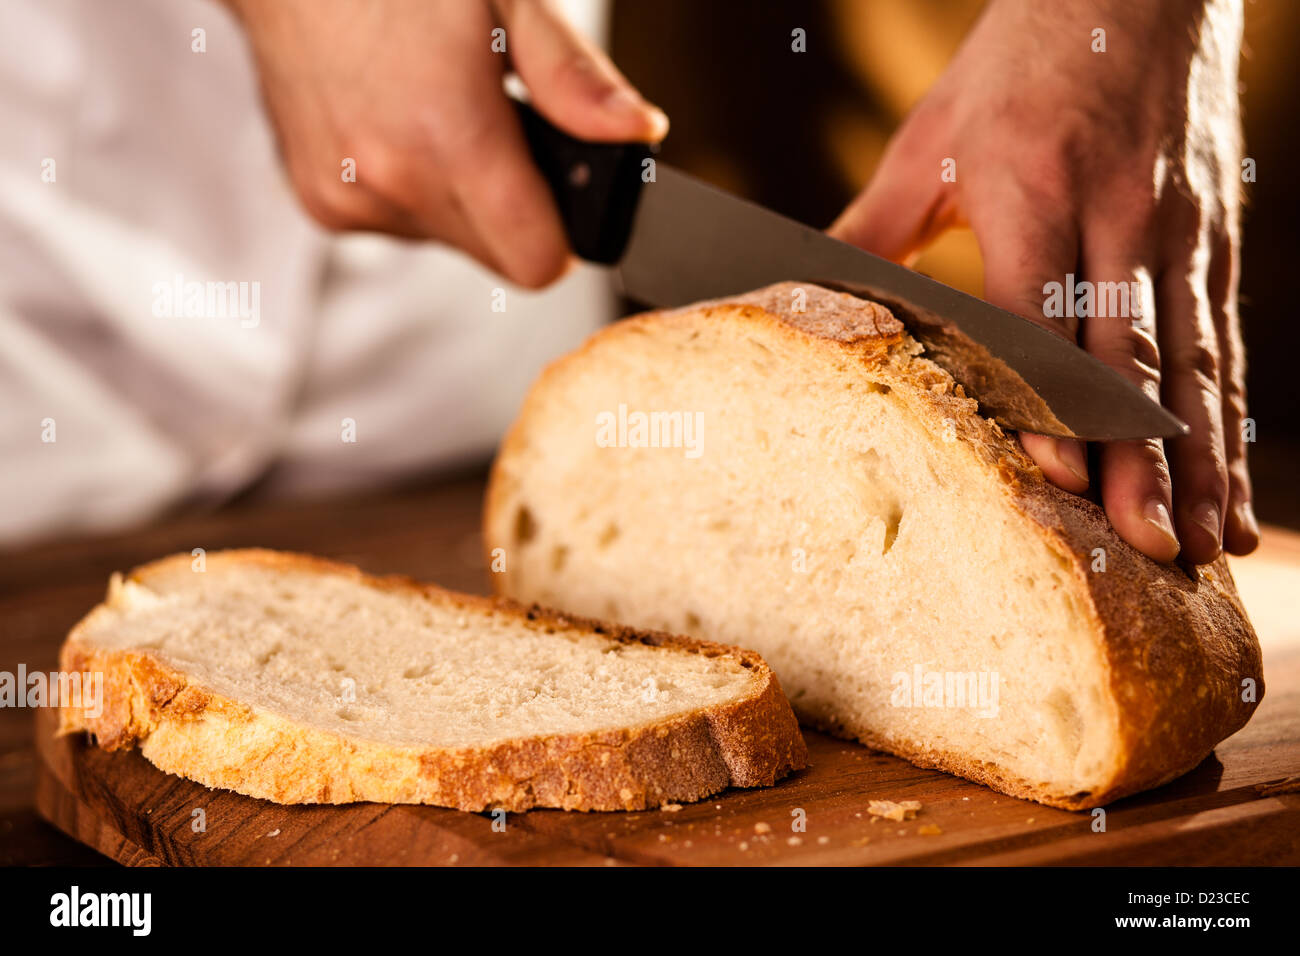 Son découpage Baker sur une planche à pain Banque D'Images